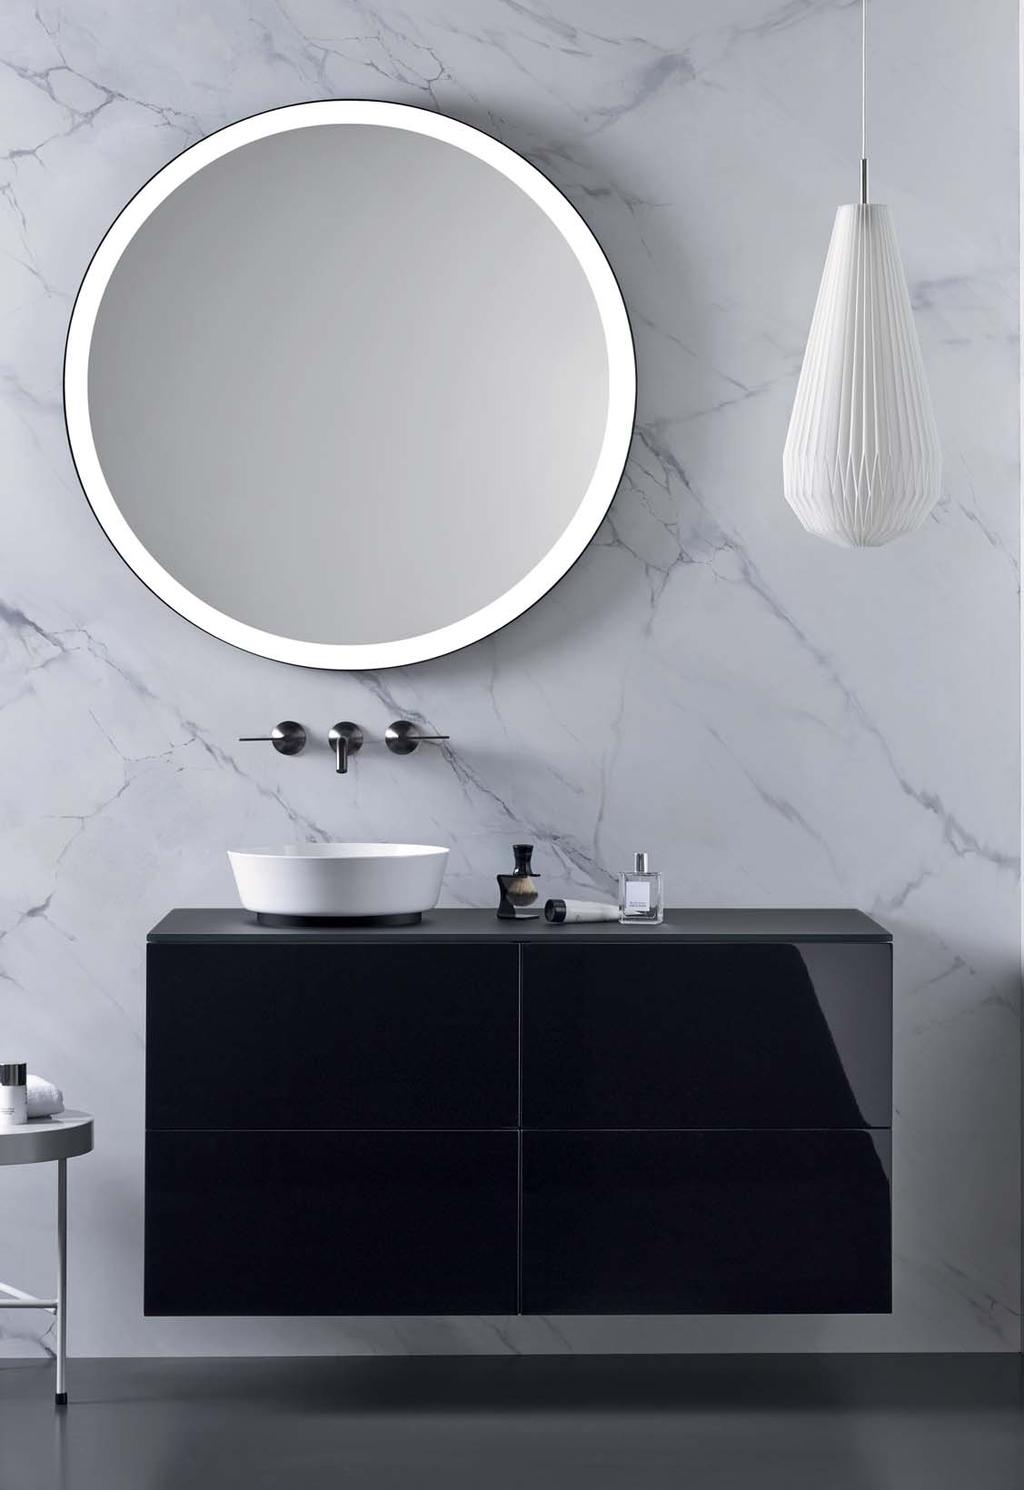 Vanity, mirror and tapware